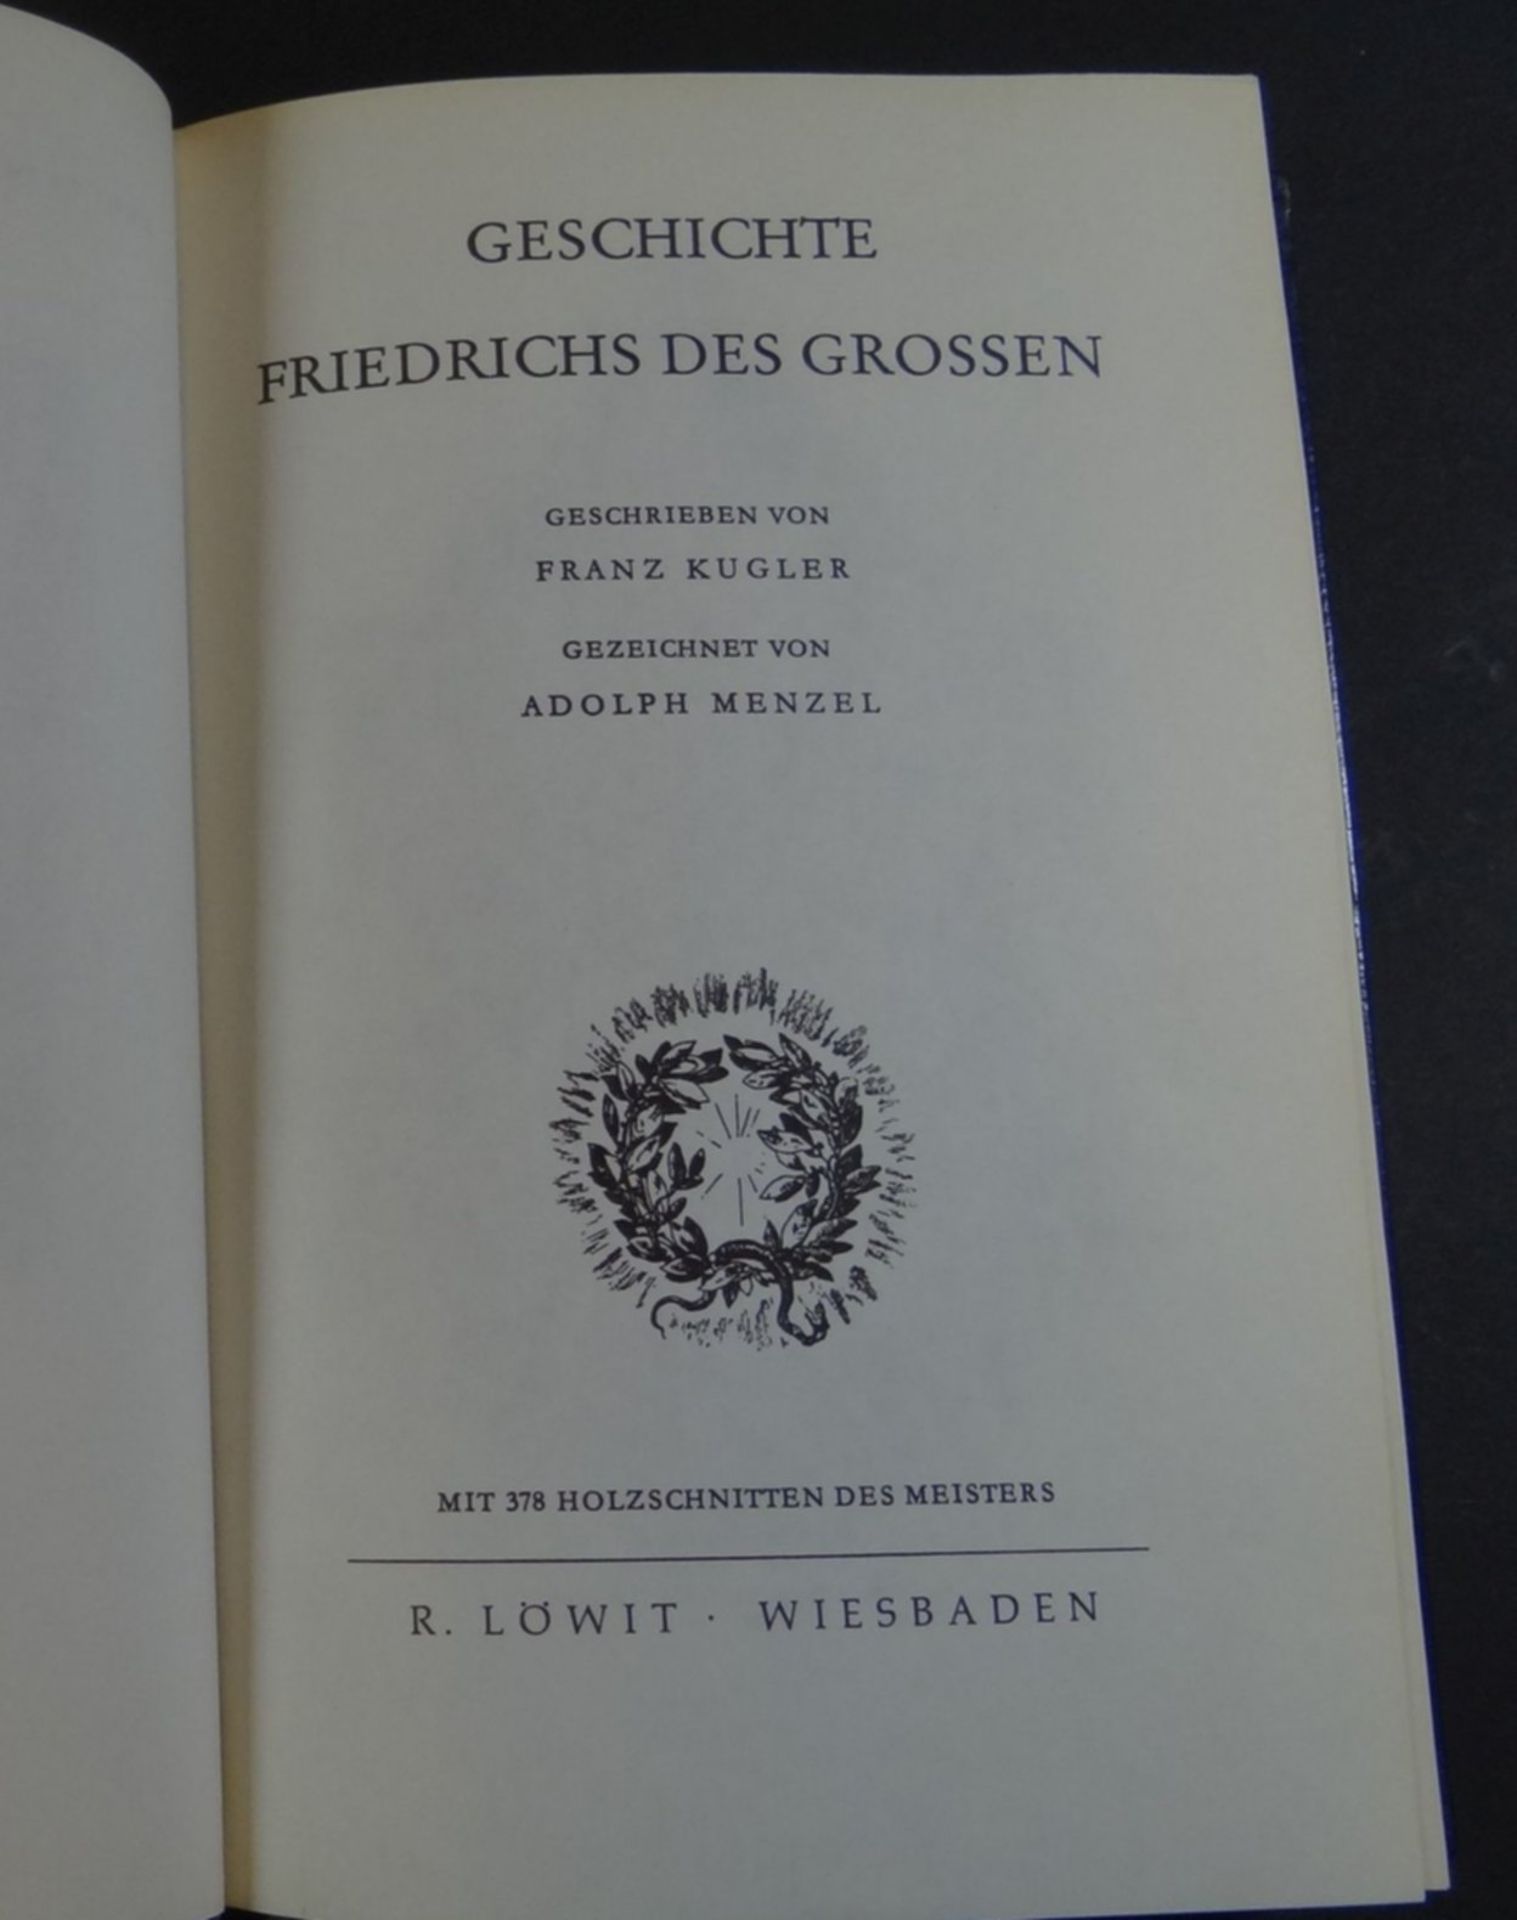 Geschichte Friedrich des Grossen" von Kugler mit ca. 380 Holzstichen von Menzel, biblioph. Luxus Au - Bild 6 aus 12